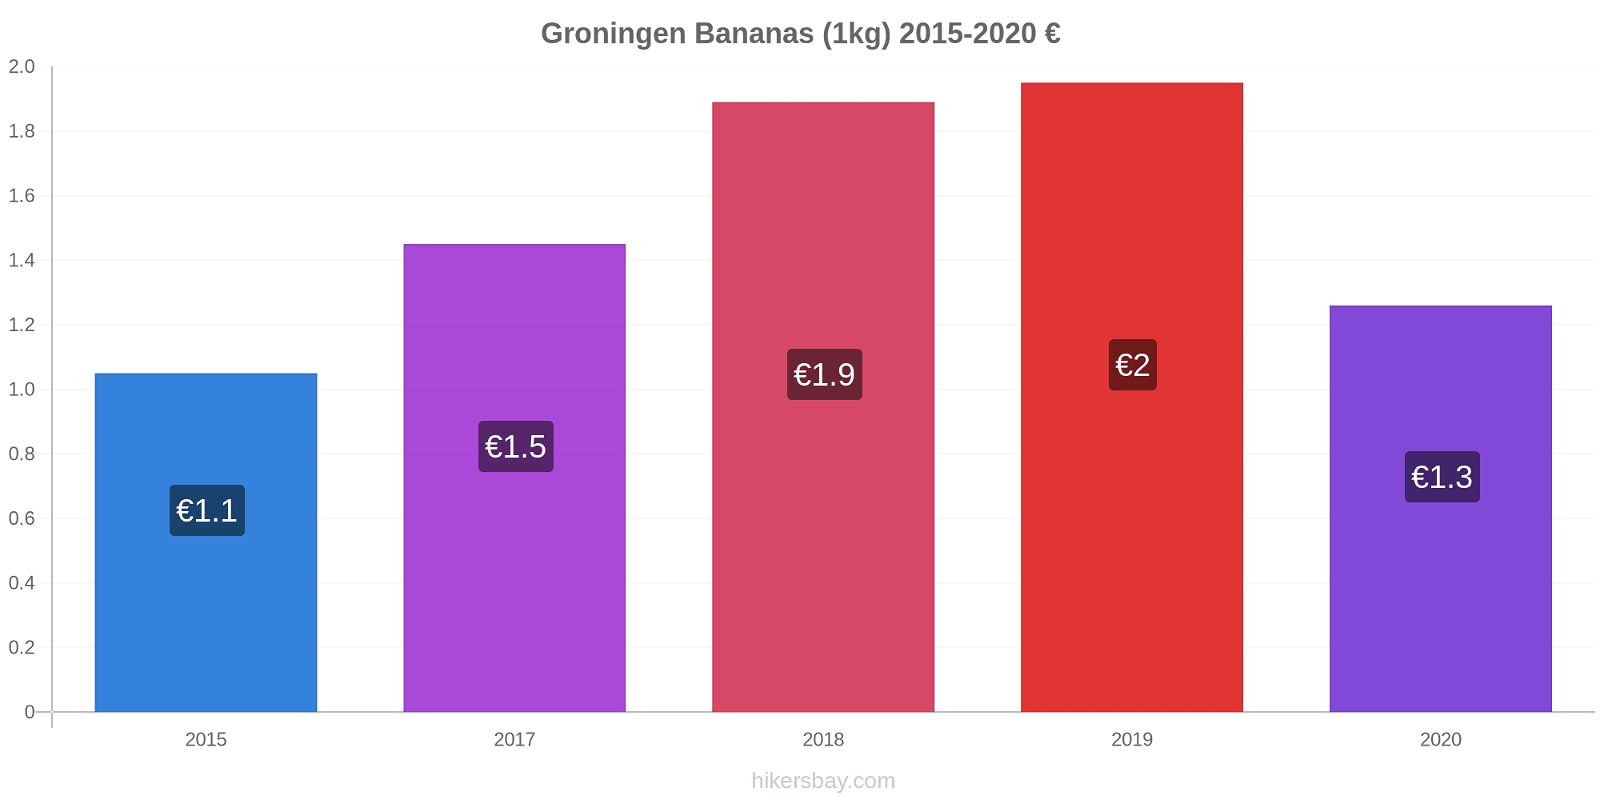 Groningen price changes Bananas (1kg) hikersbay.com